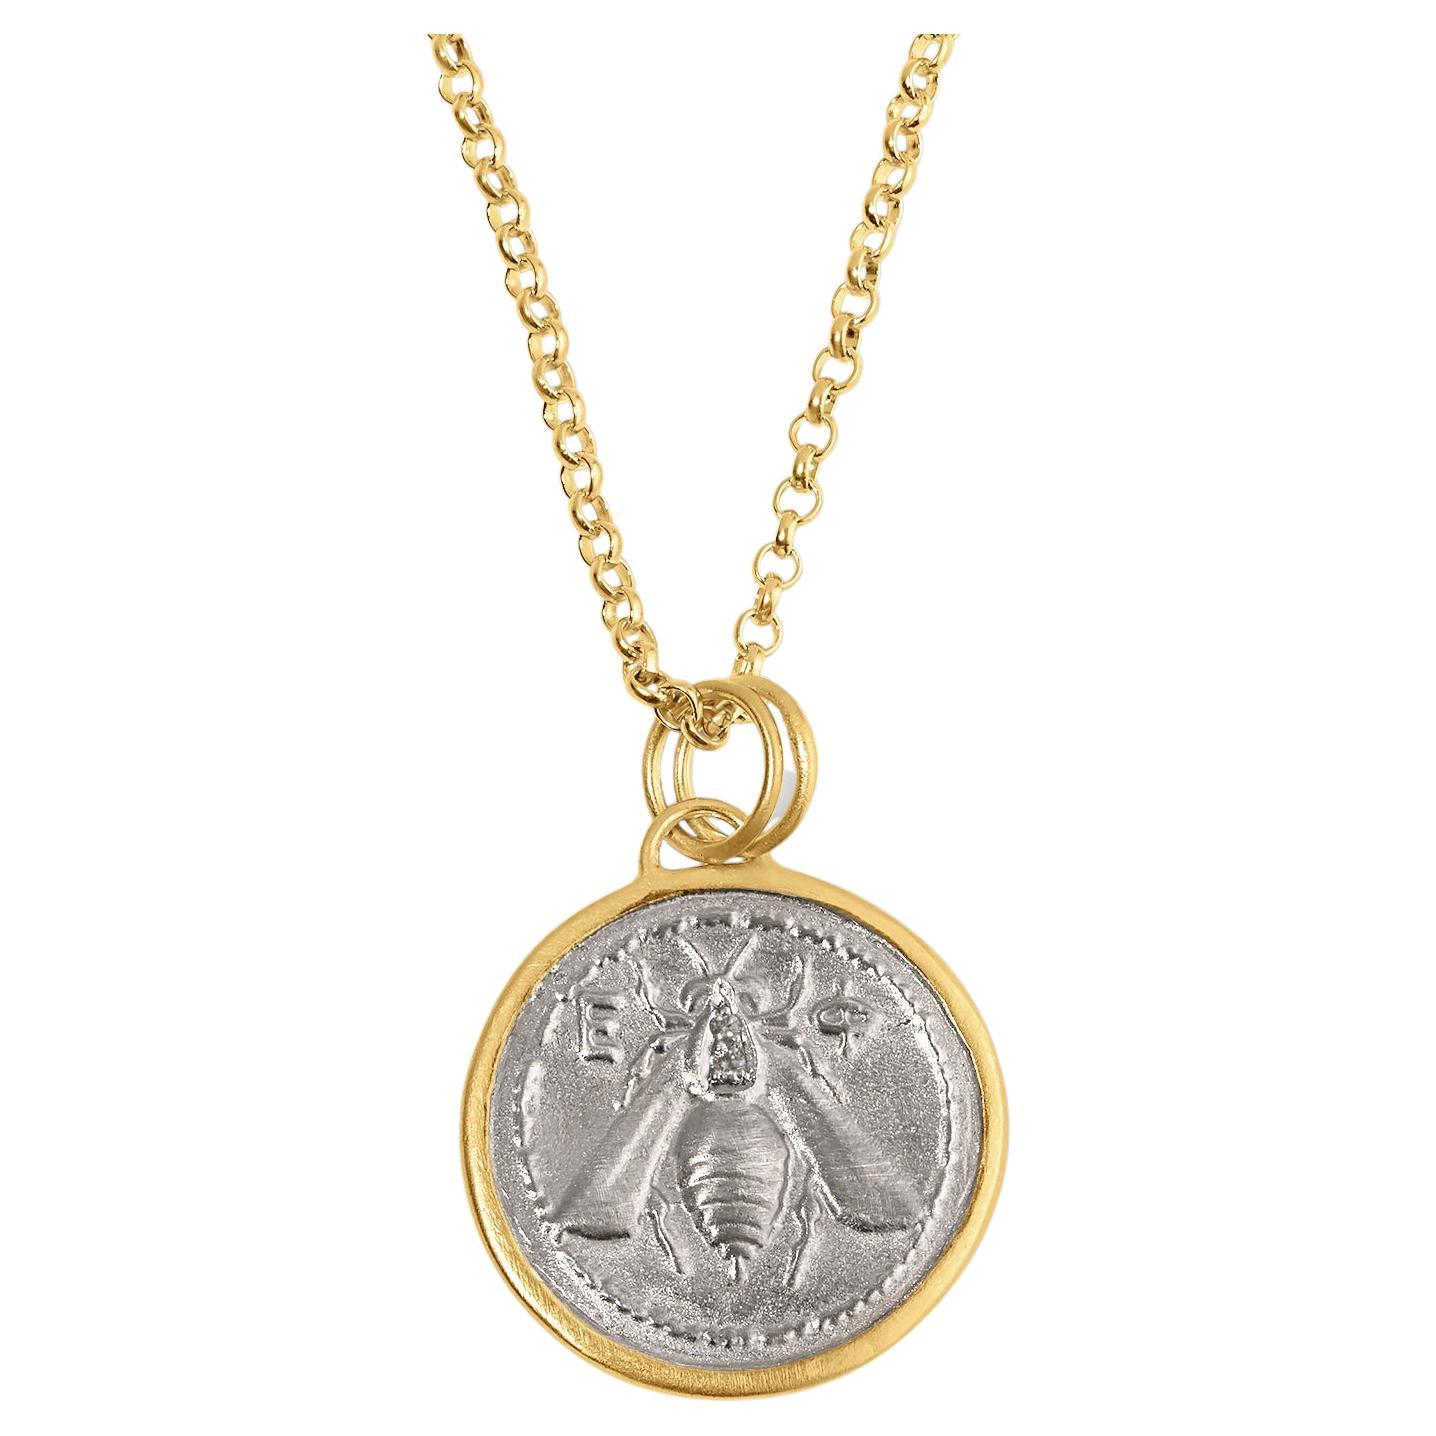 Kurtulan pièce de monnaie en forme d'abeille double face avec détail de cerf et de diamant en or et argent 24 carats